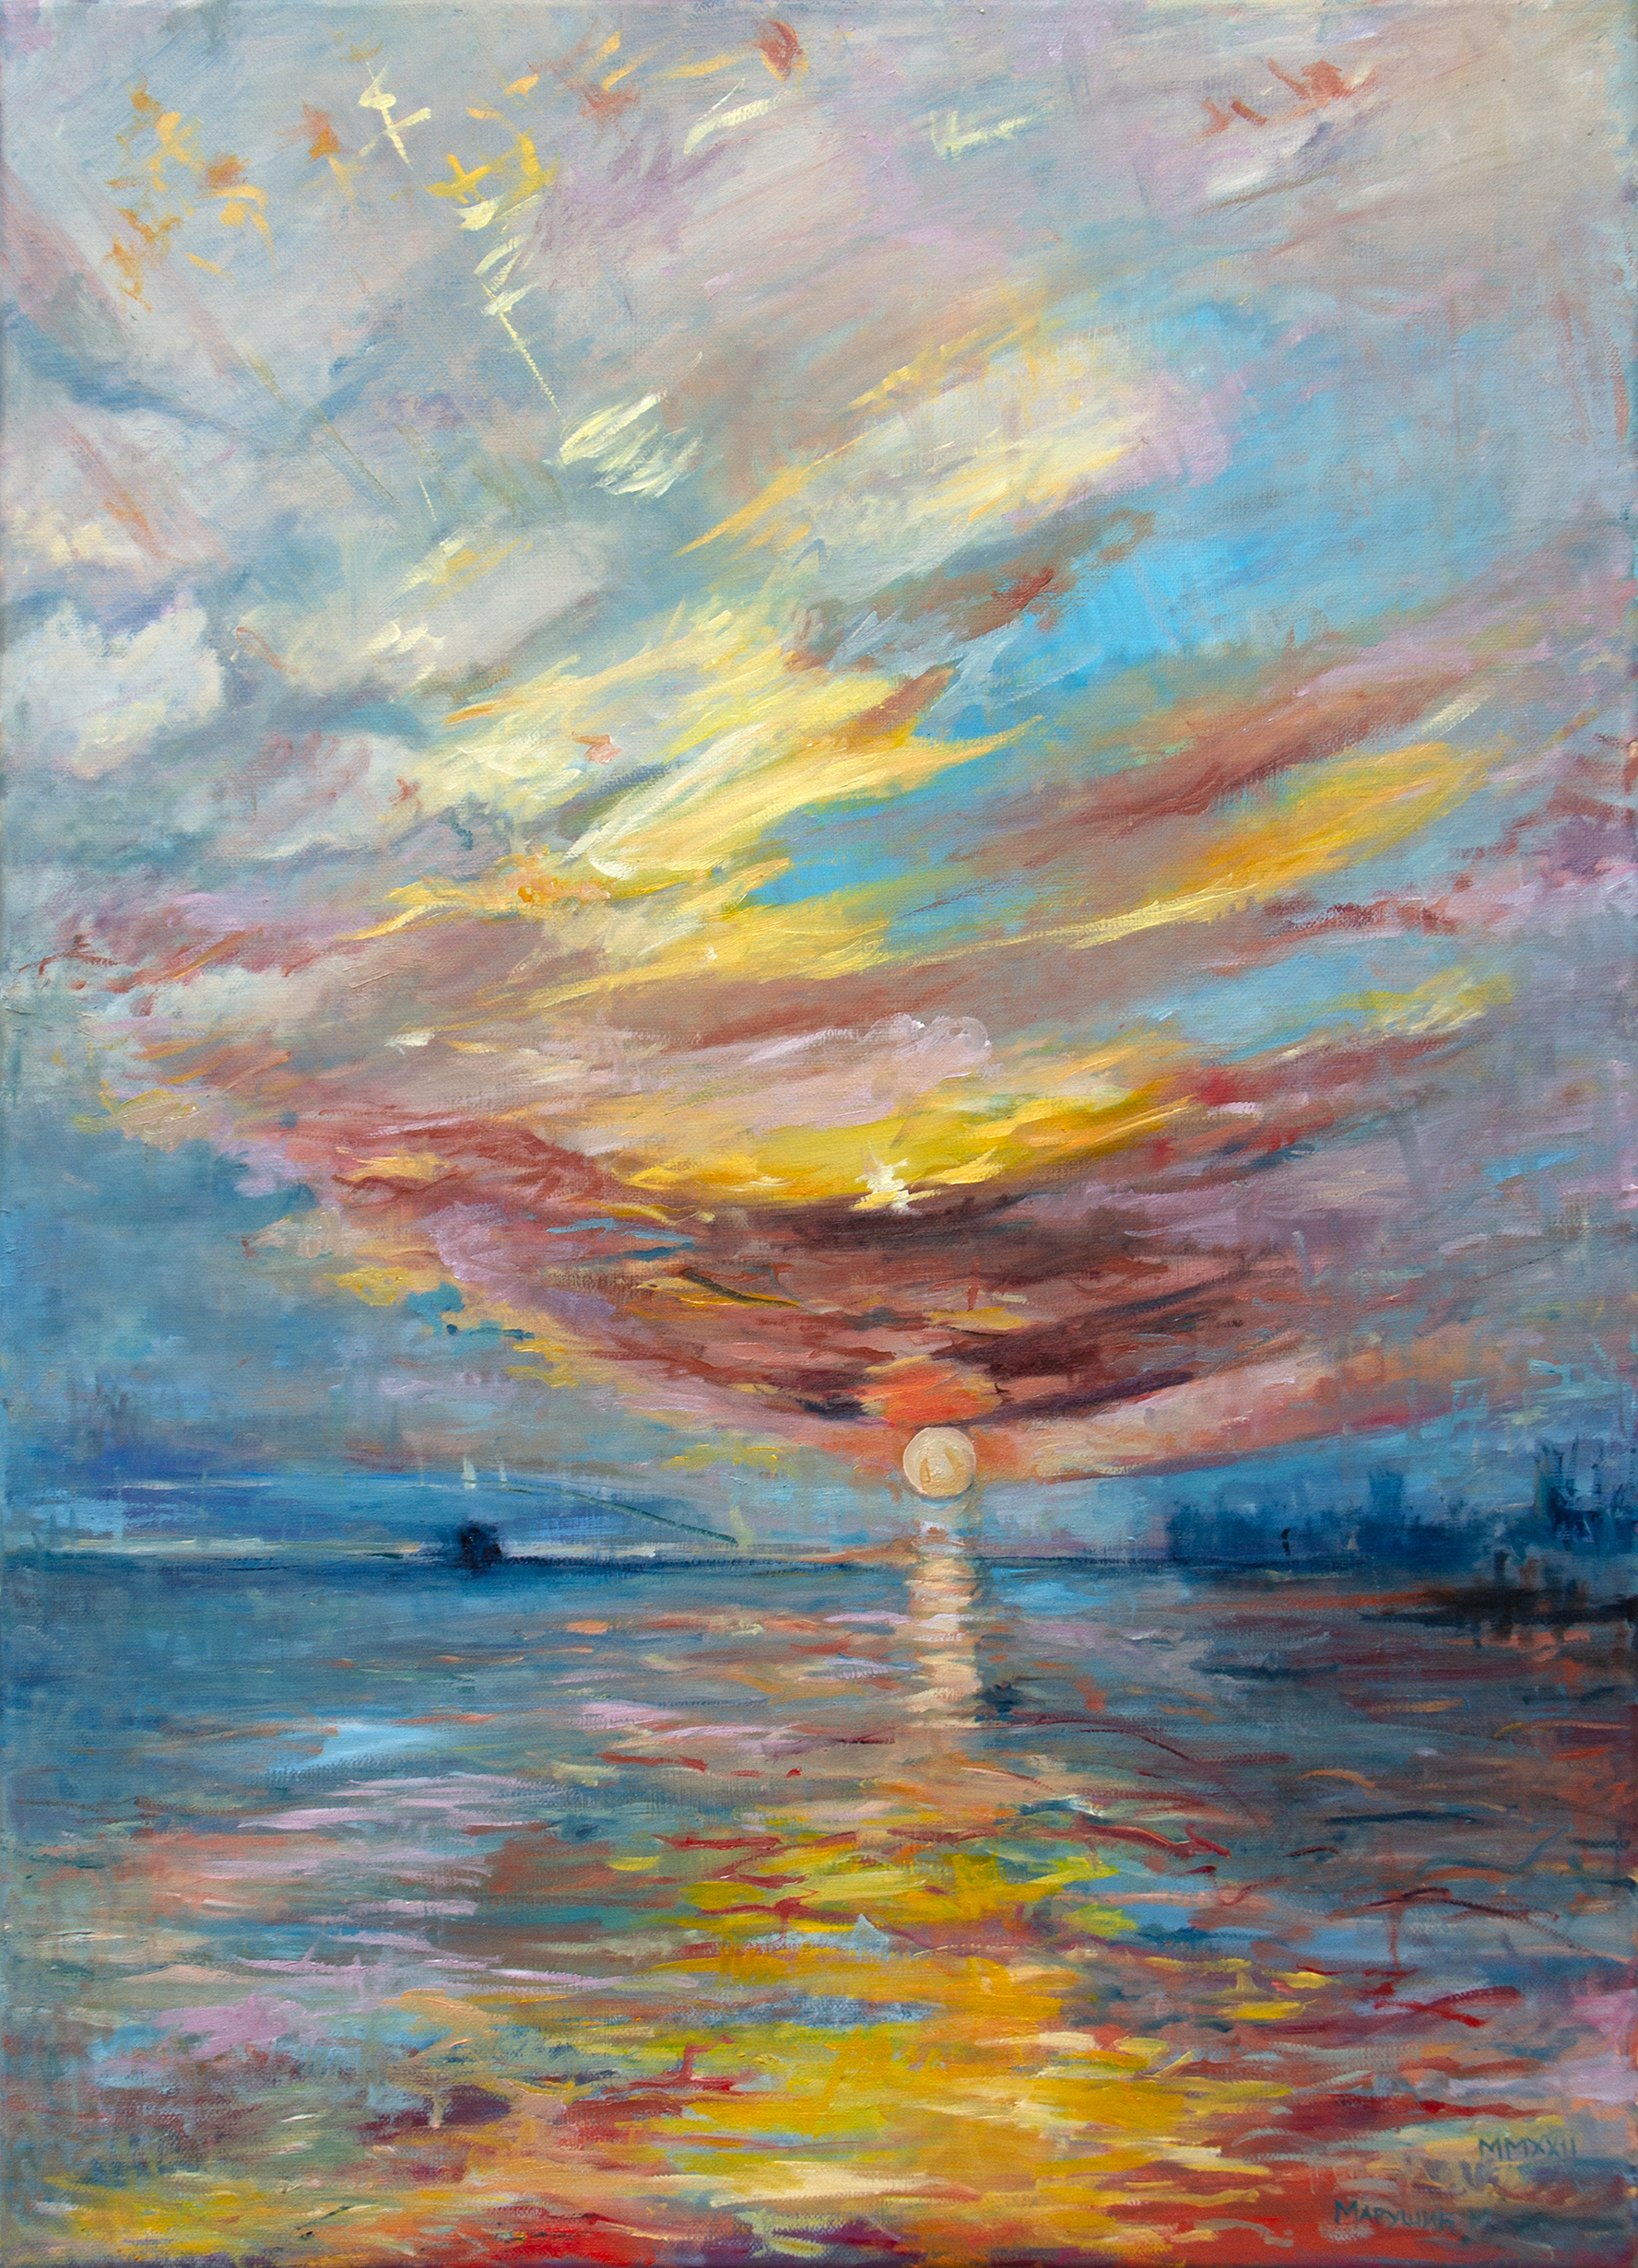 Zalazak Sunca nikad nije isti - 70x50cm - 2022g Ulje na platnu - Pejzaž- Umetnička slika - umetnik Milica MARUŠIĆ